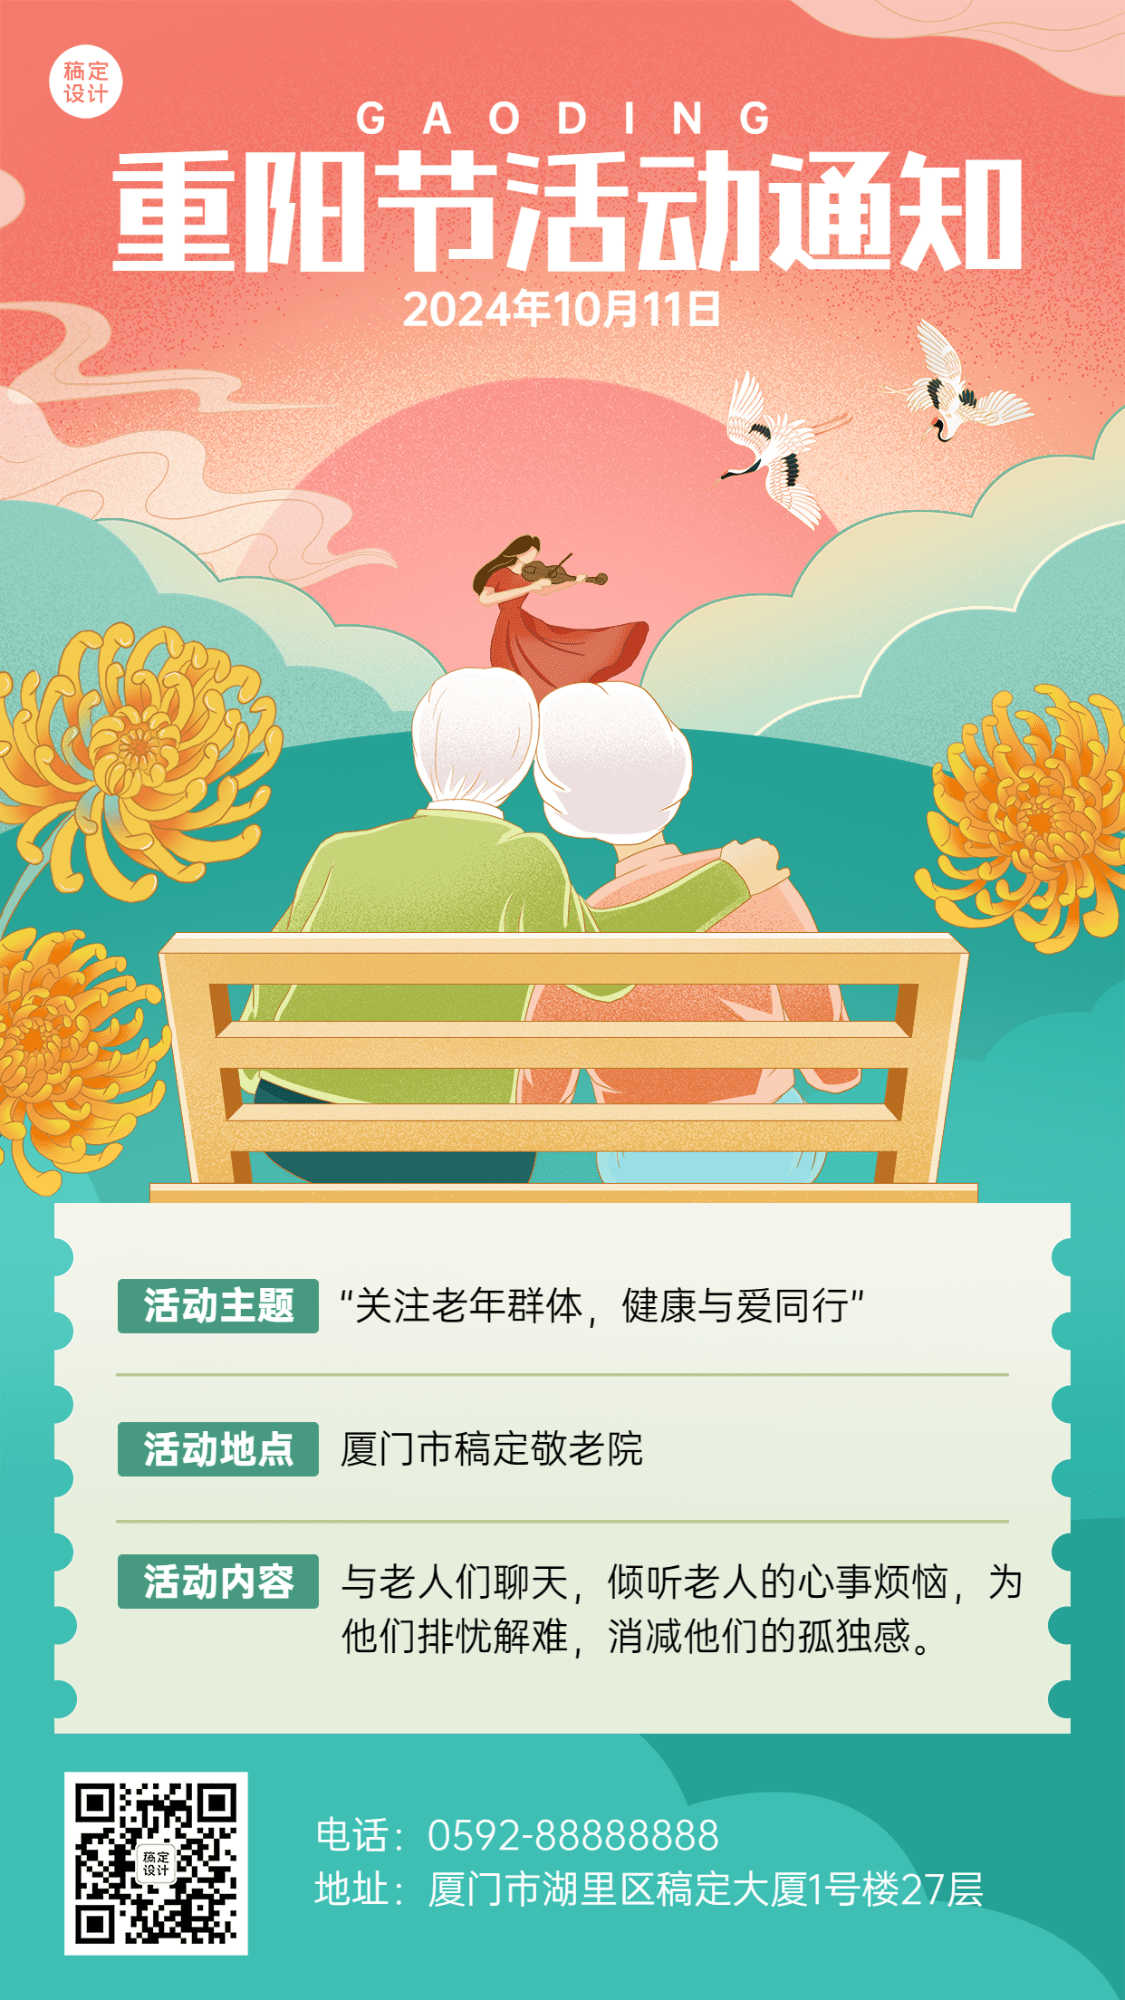 重阳节节日活动插画手机海报预览效果